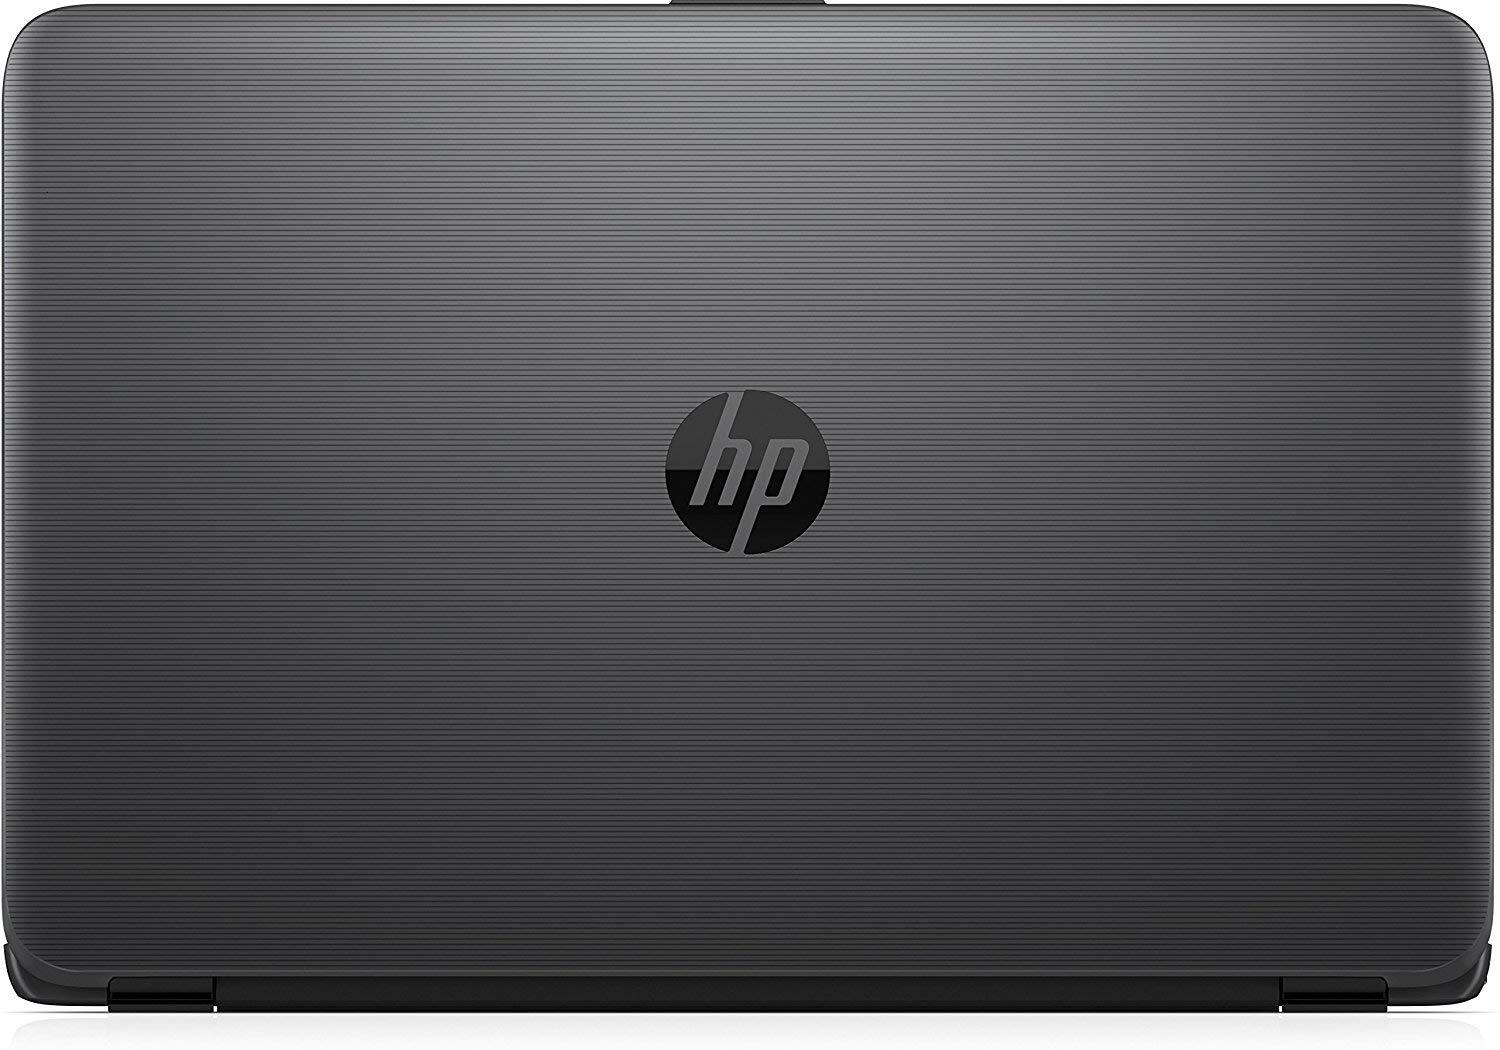 HP 240 G5 A1020 Intel® Pentium Dual Core (4GB RAM / 500GB HDD / WIN10 PRO),BLACK-M000000000301 www.mysocially.com